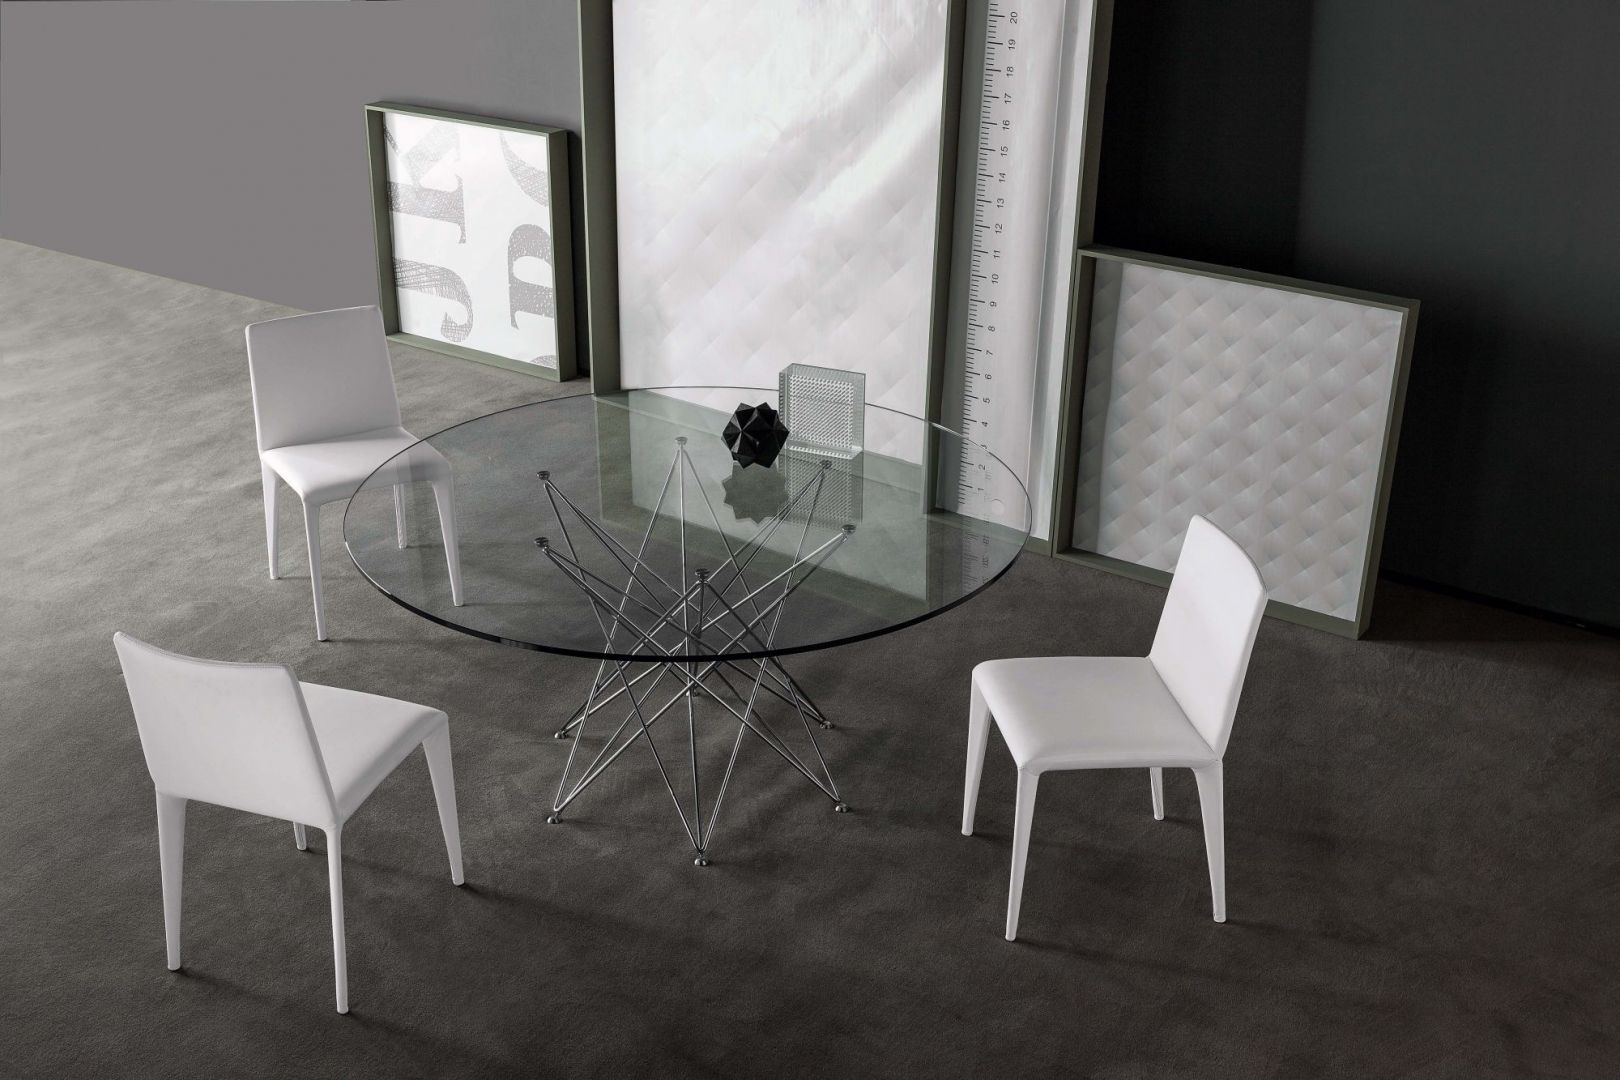 Stół Octa posiada nogi wykonane z metalu w kolorze chromu, finezyjnie splecione z kilku rurek, oraz blat hartowany. Dzięki swojej minimalistycznej formie, stół  nadaje się idealnie do nowoczesnych wnętrz. Fot. Go Modern Furniture